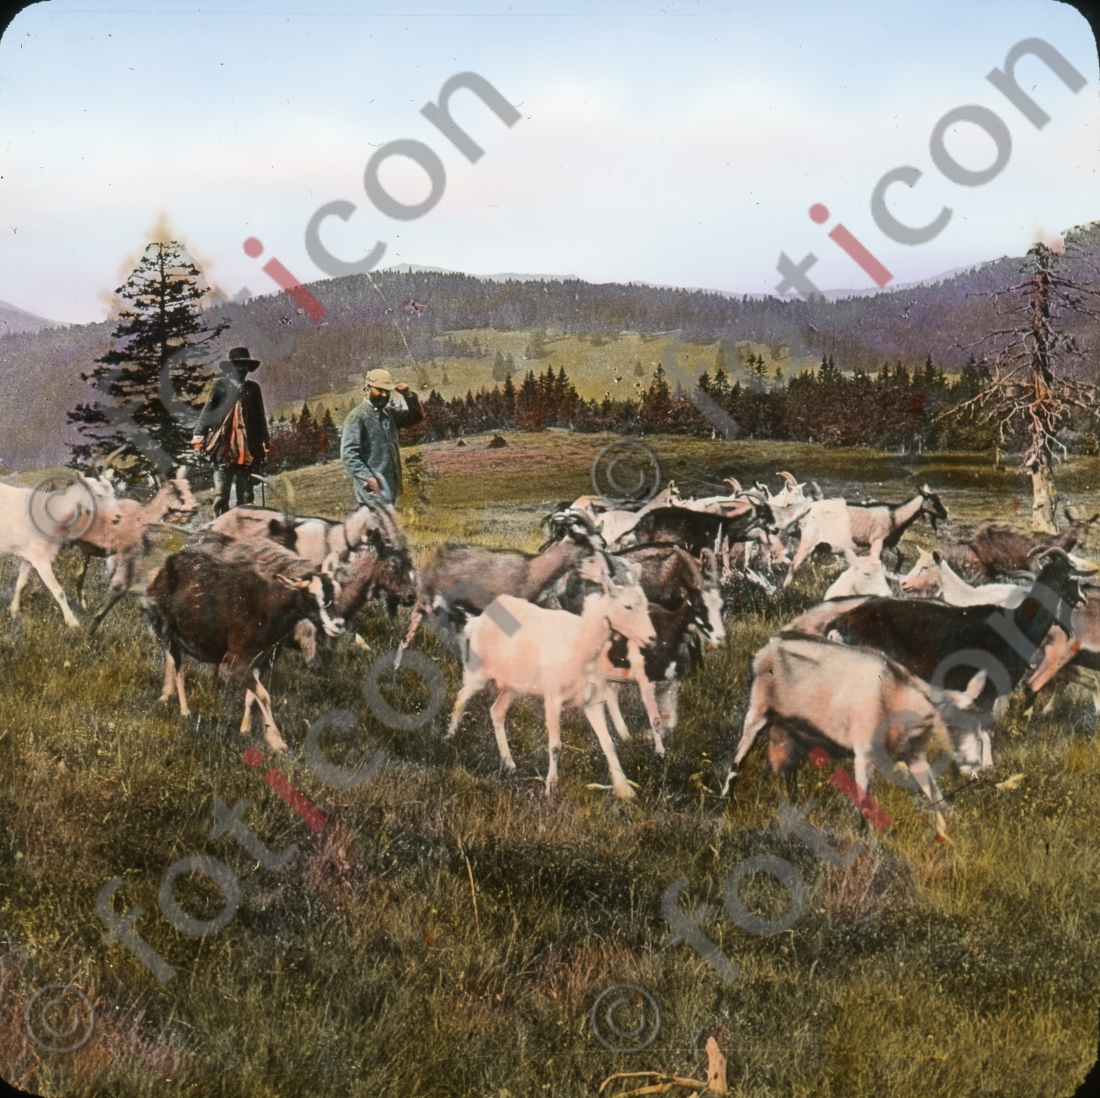 Ziegen im Schwarzwald | Goats in the Black Forest - Foto foticon-simon-127-017.jpg | foticon.de - Bilddatenbank für Motive aus Geschichte und Kultur